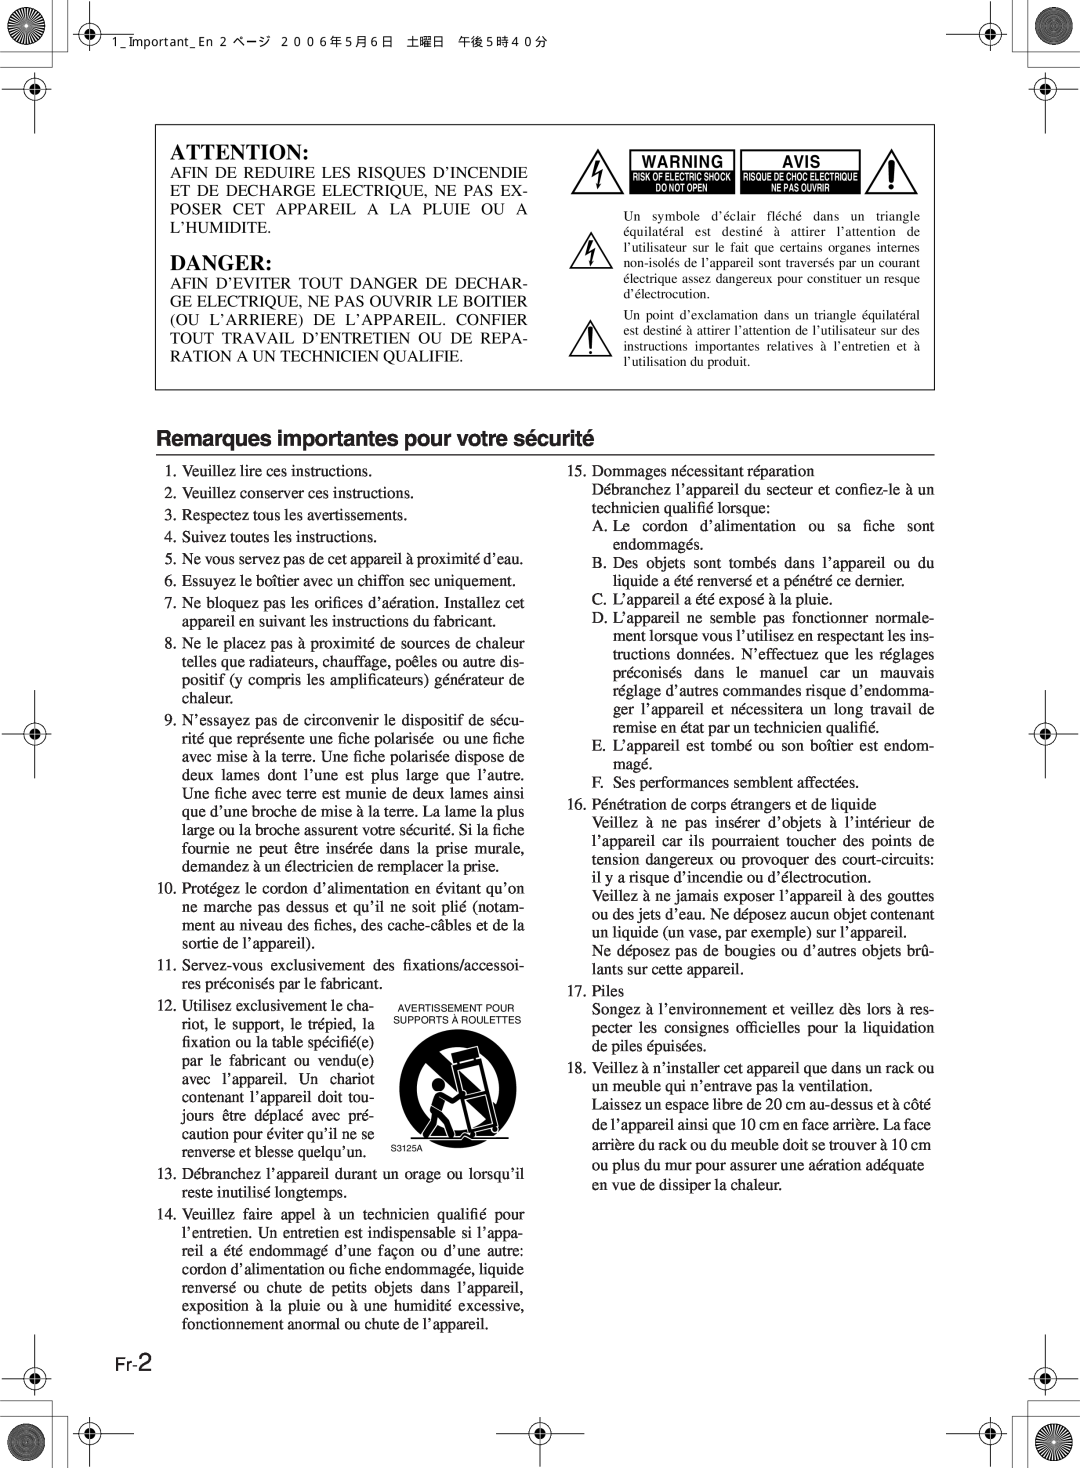 Onkyo TX-8222, TX-8522 manual Danger, Remarques importantes pour votre sécurité, Avis, Fr-2 